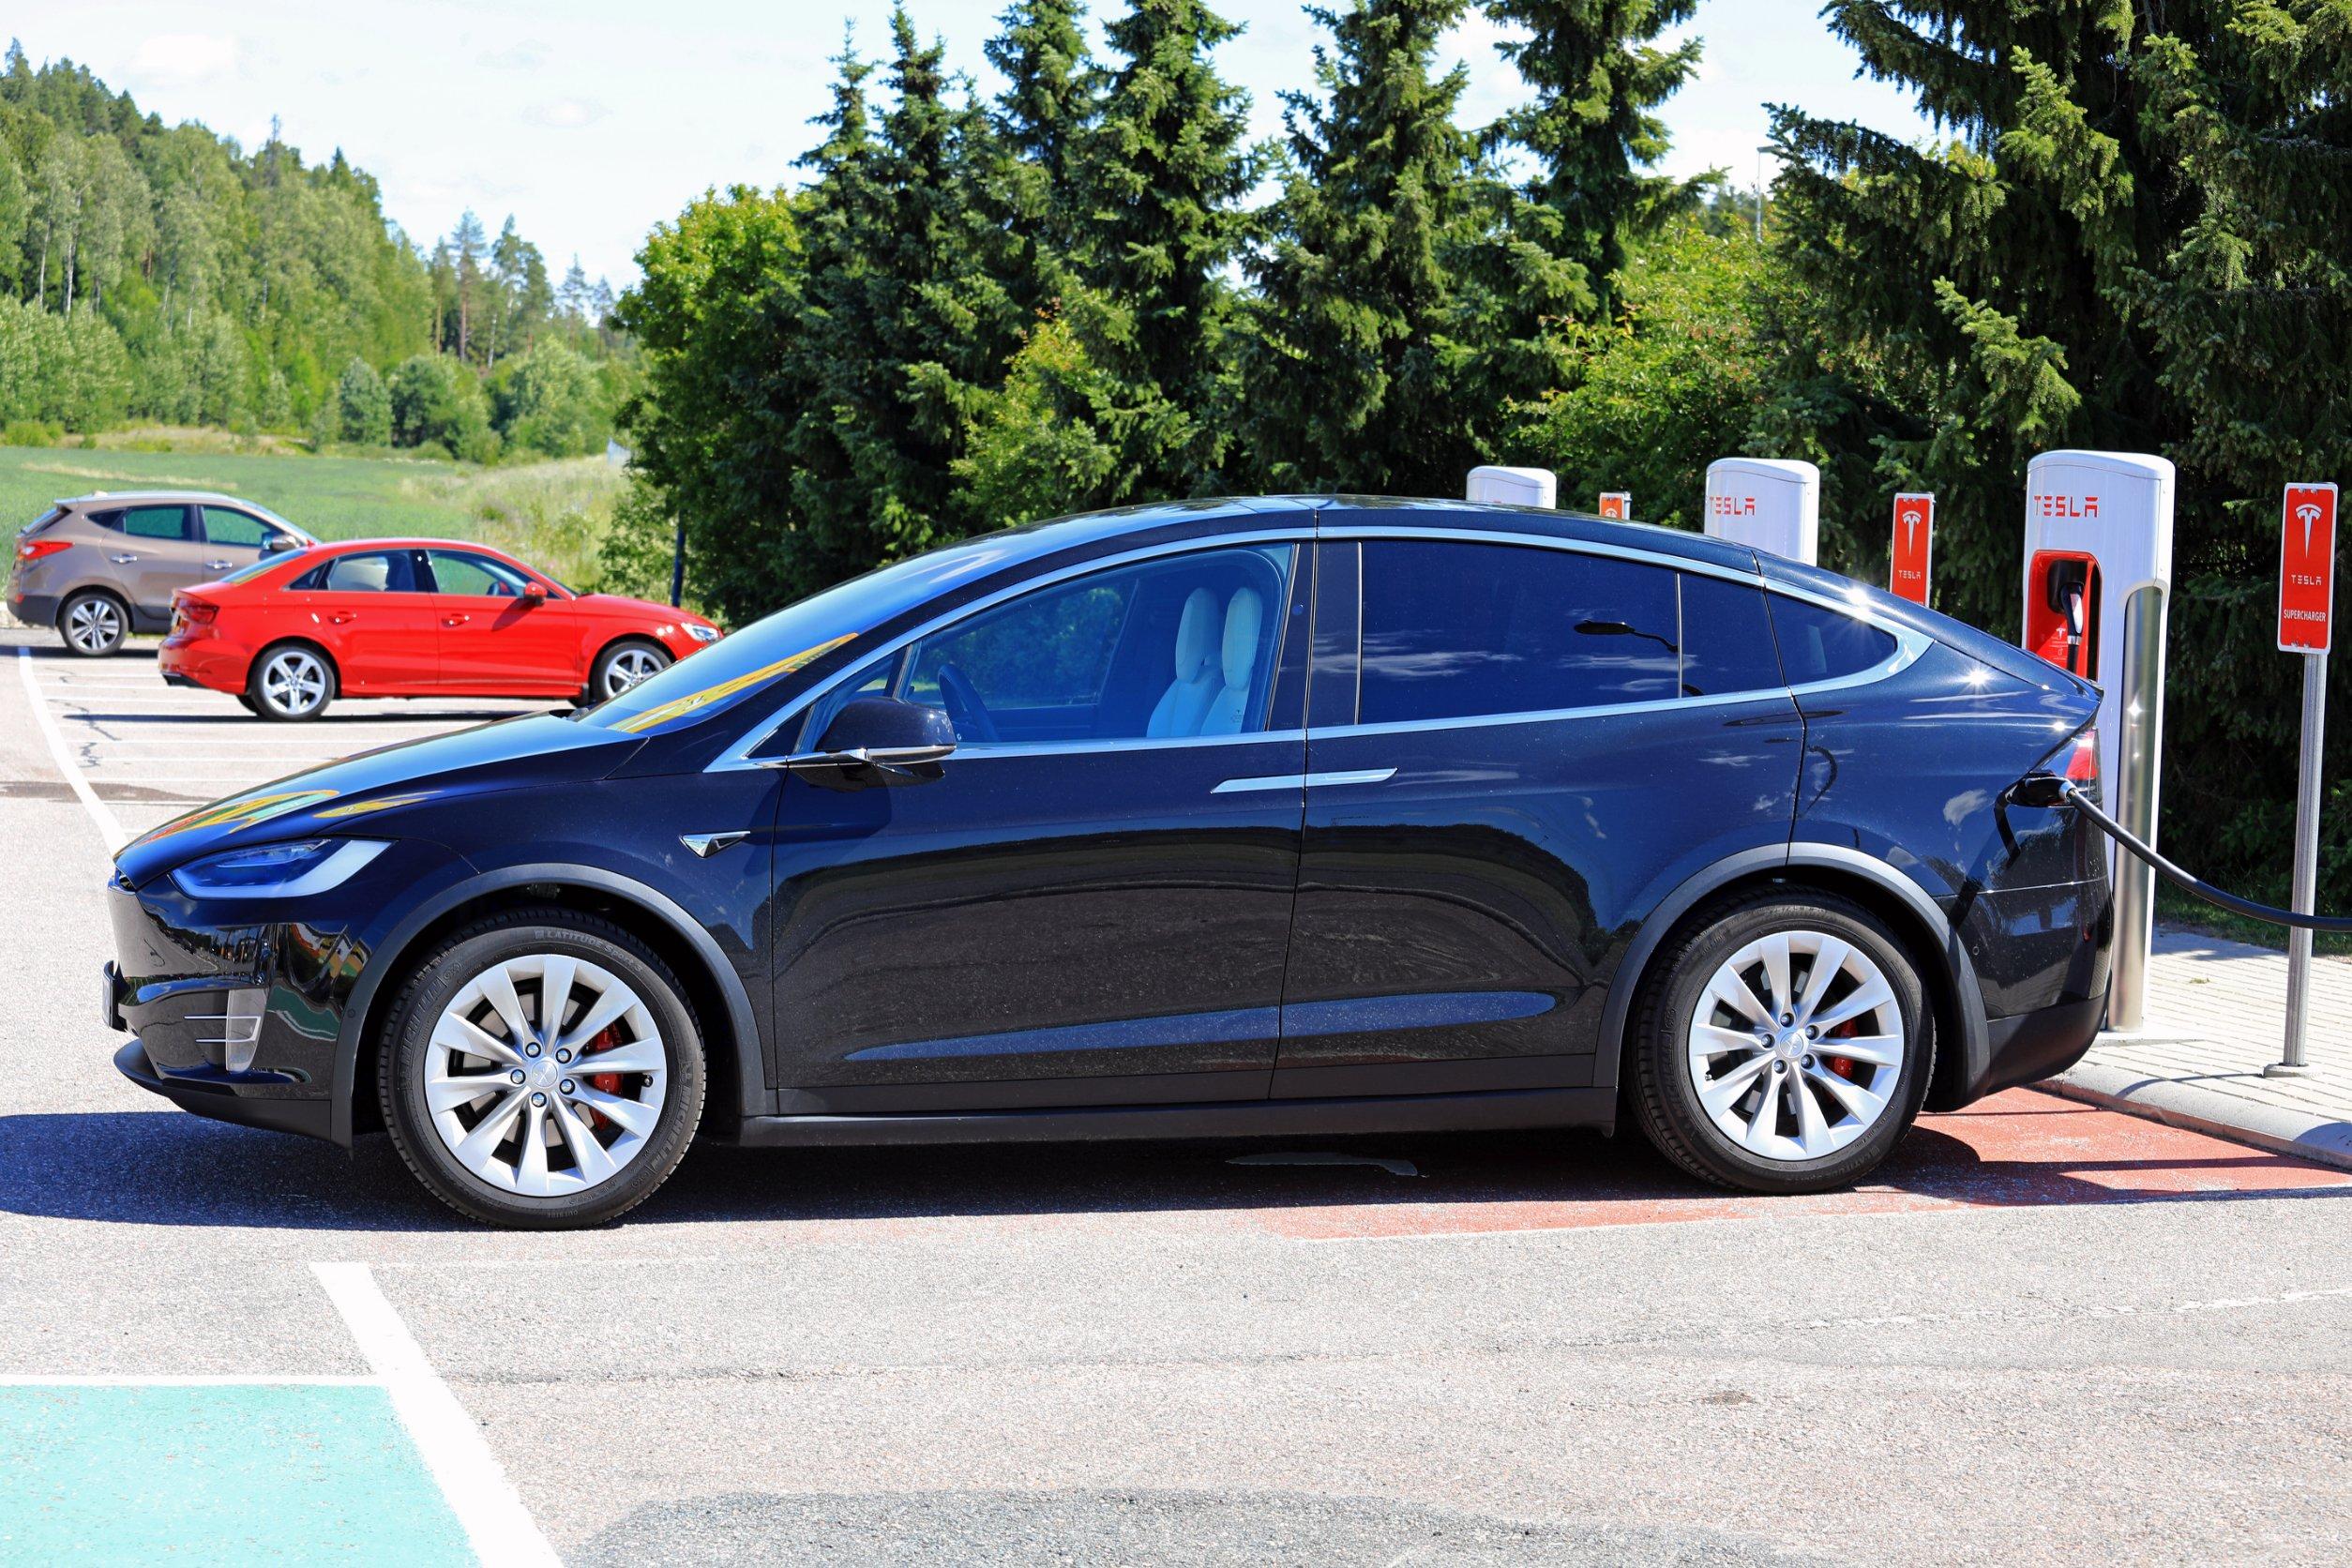 Ricarica Tesla con auto diverse: i prezzi con e senza abbonamento